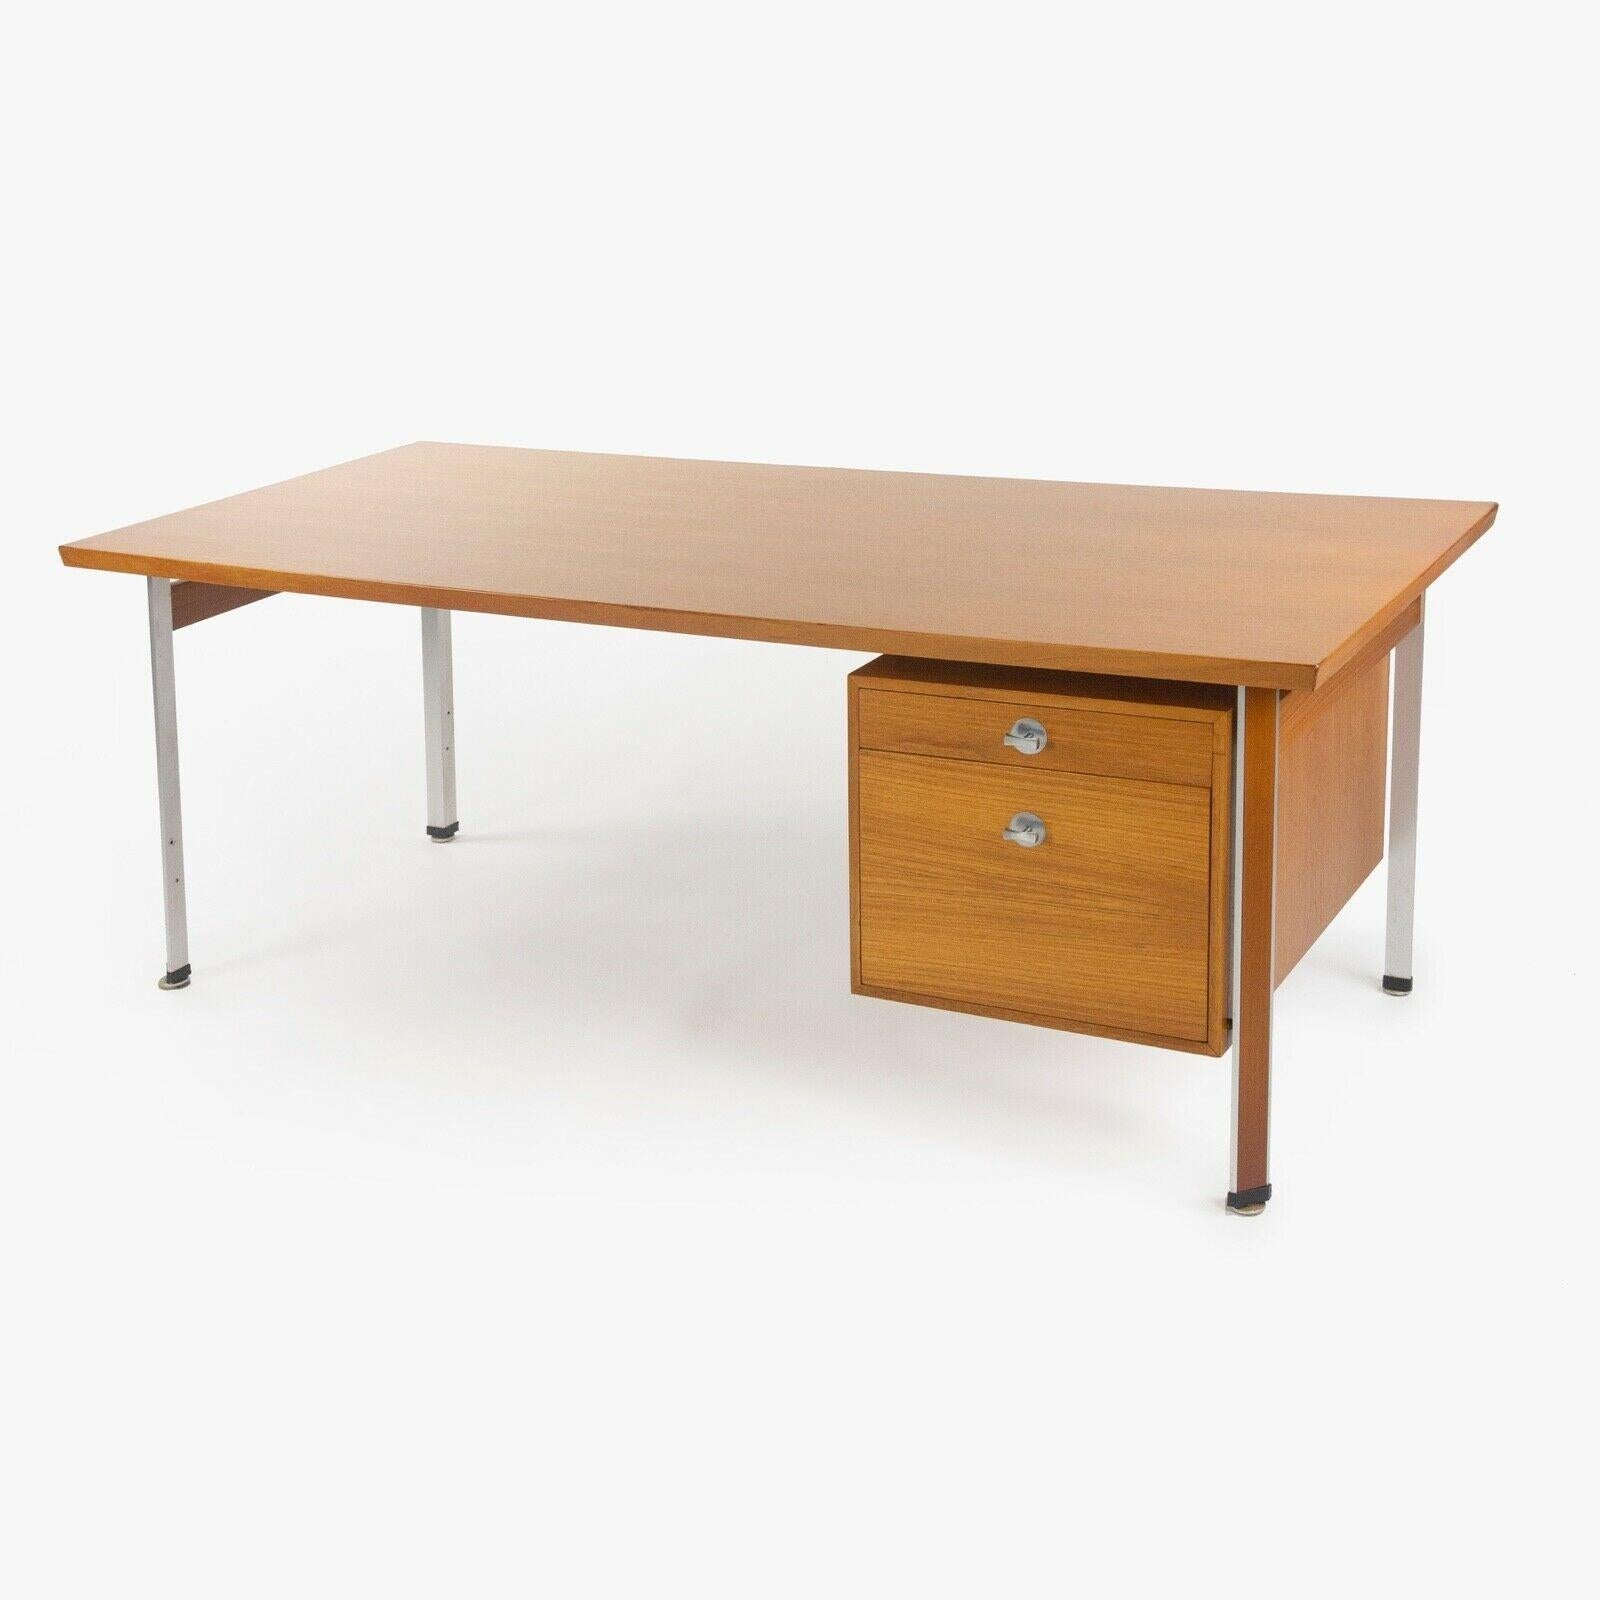 Danish 1960s Finn Juhl France & Son Technocrat Desk Model 963 in Teak Made in Denmark For Sale